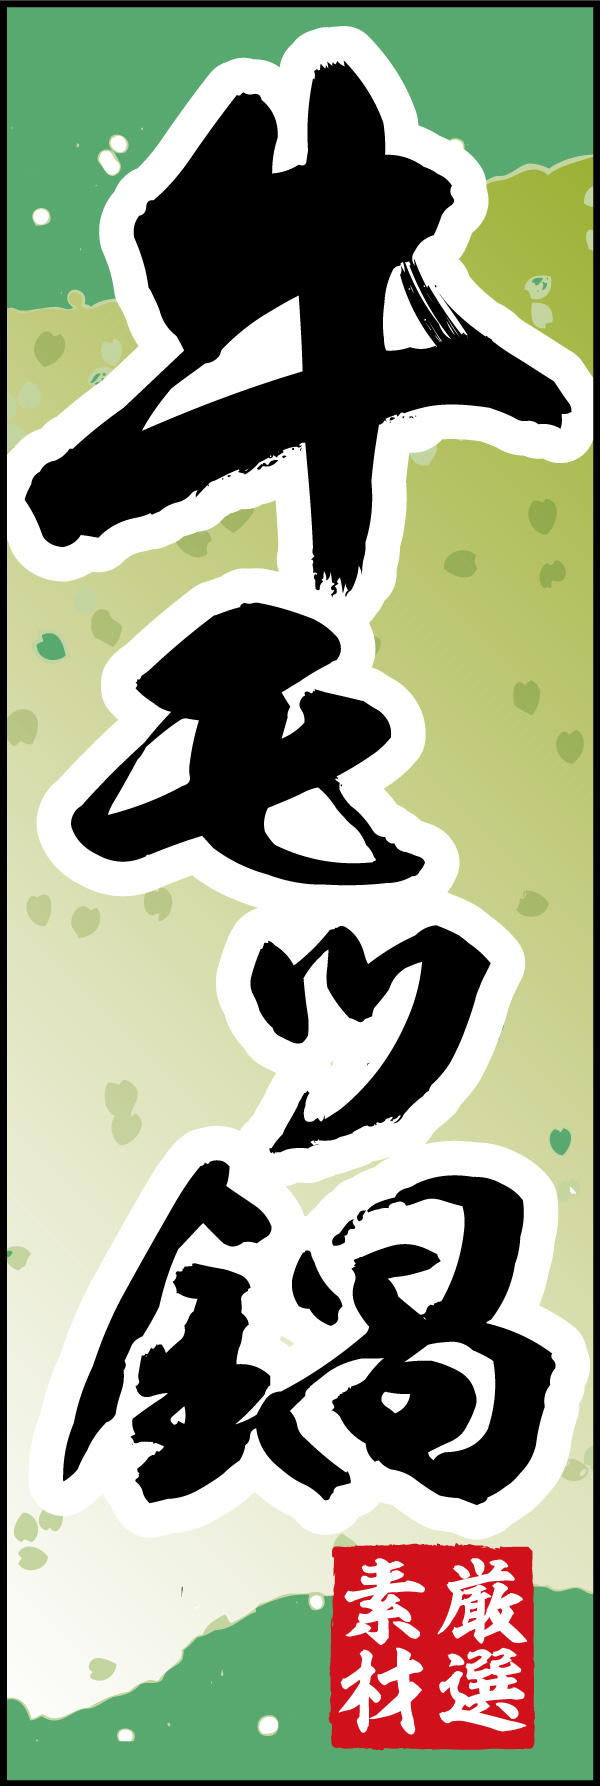 牛モツ鍋 06 「牛モツ鍋」ののぼりです。和柄をベースに筆文字で「和」のイメージを強調してみました。(Y.M)